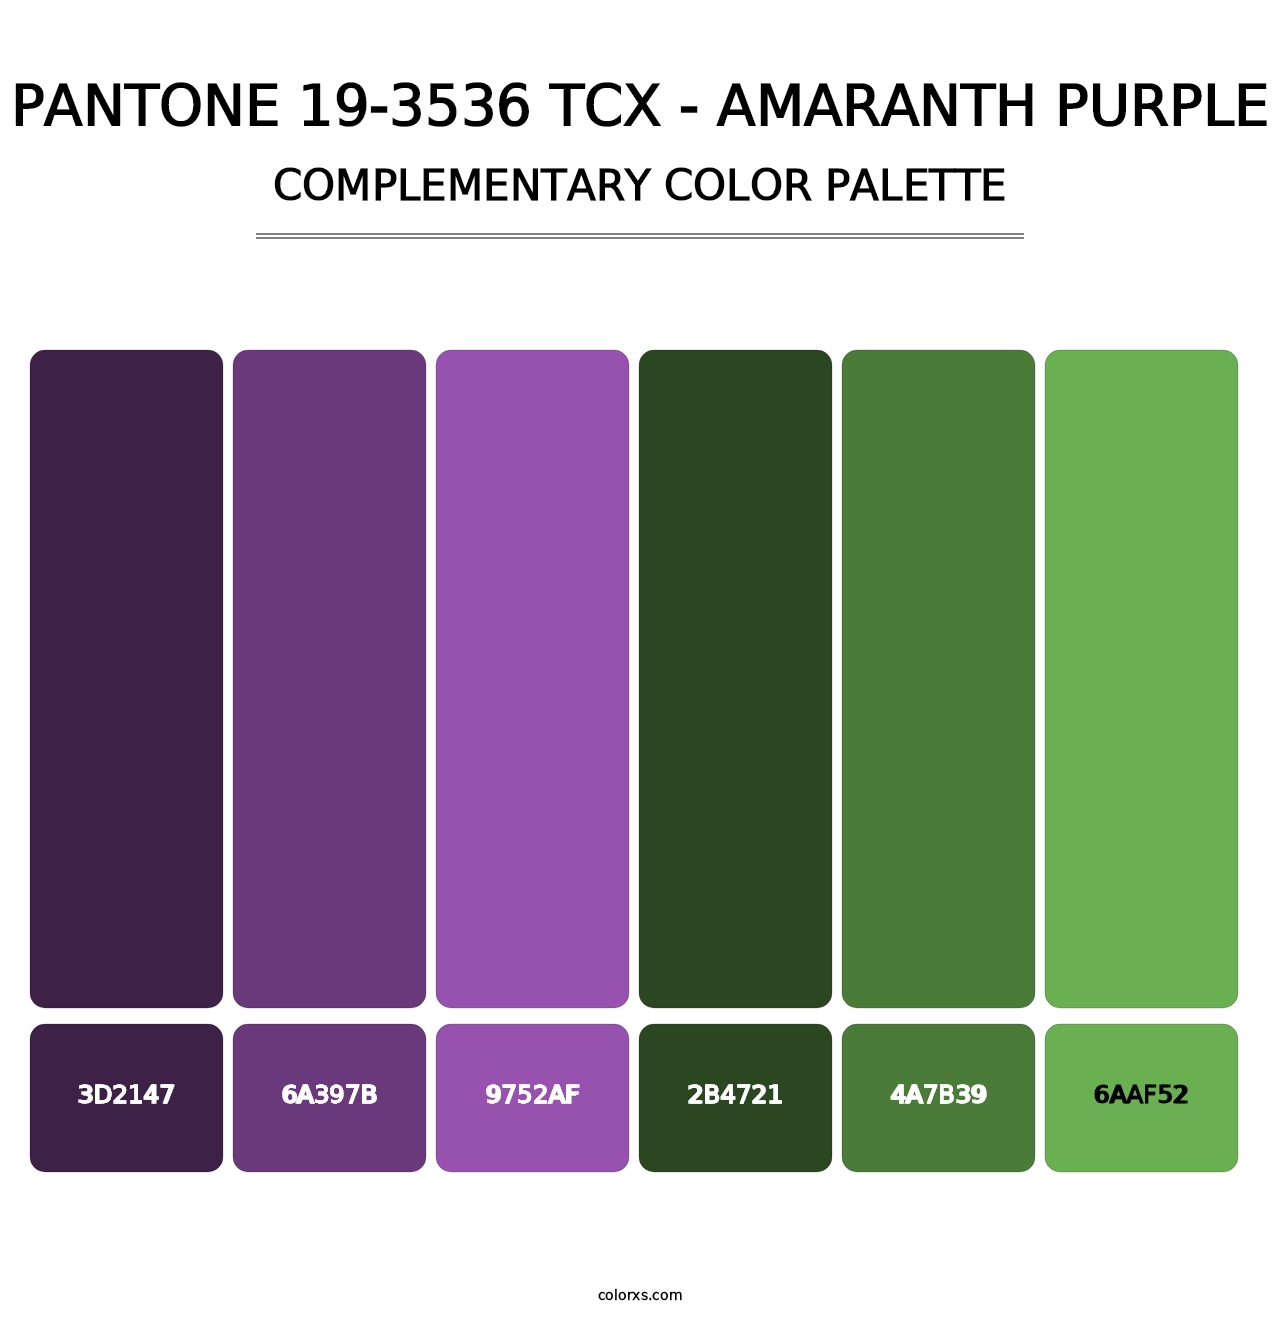 PANTONE 19-3536 TCX - Amaranth Purple - Complementary Color Palette